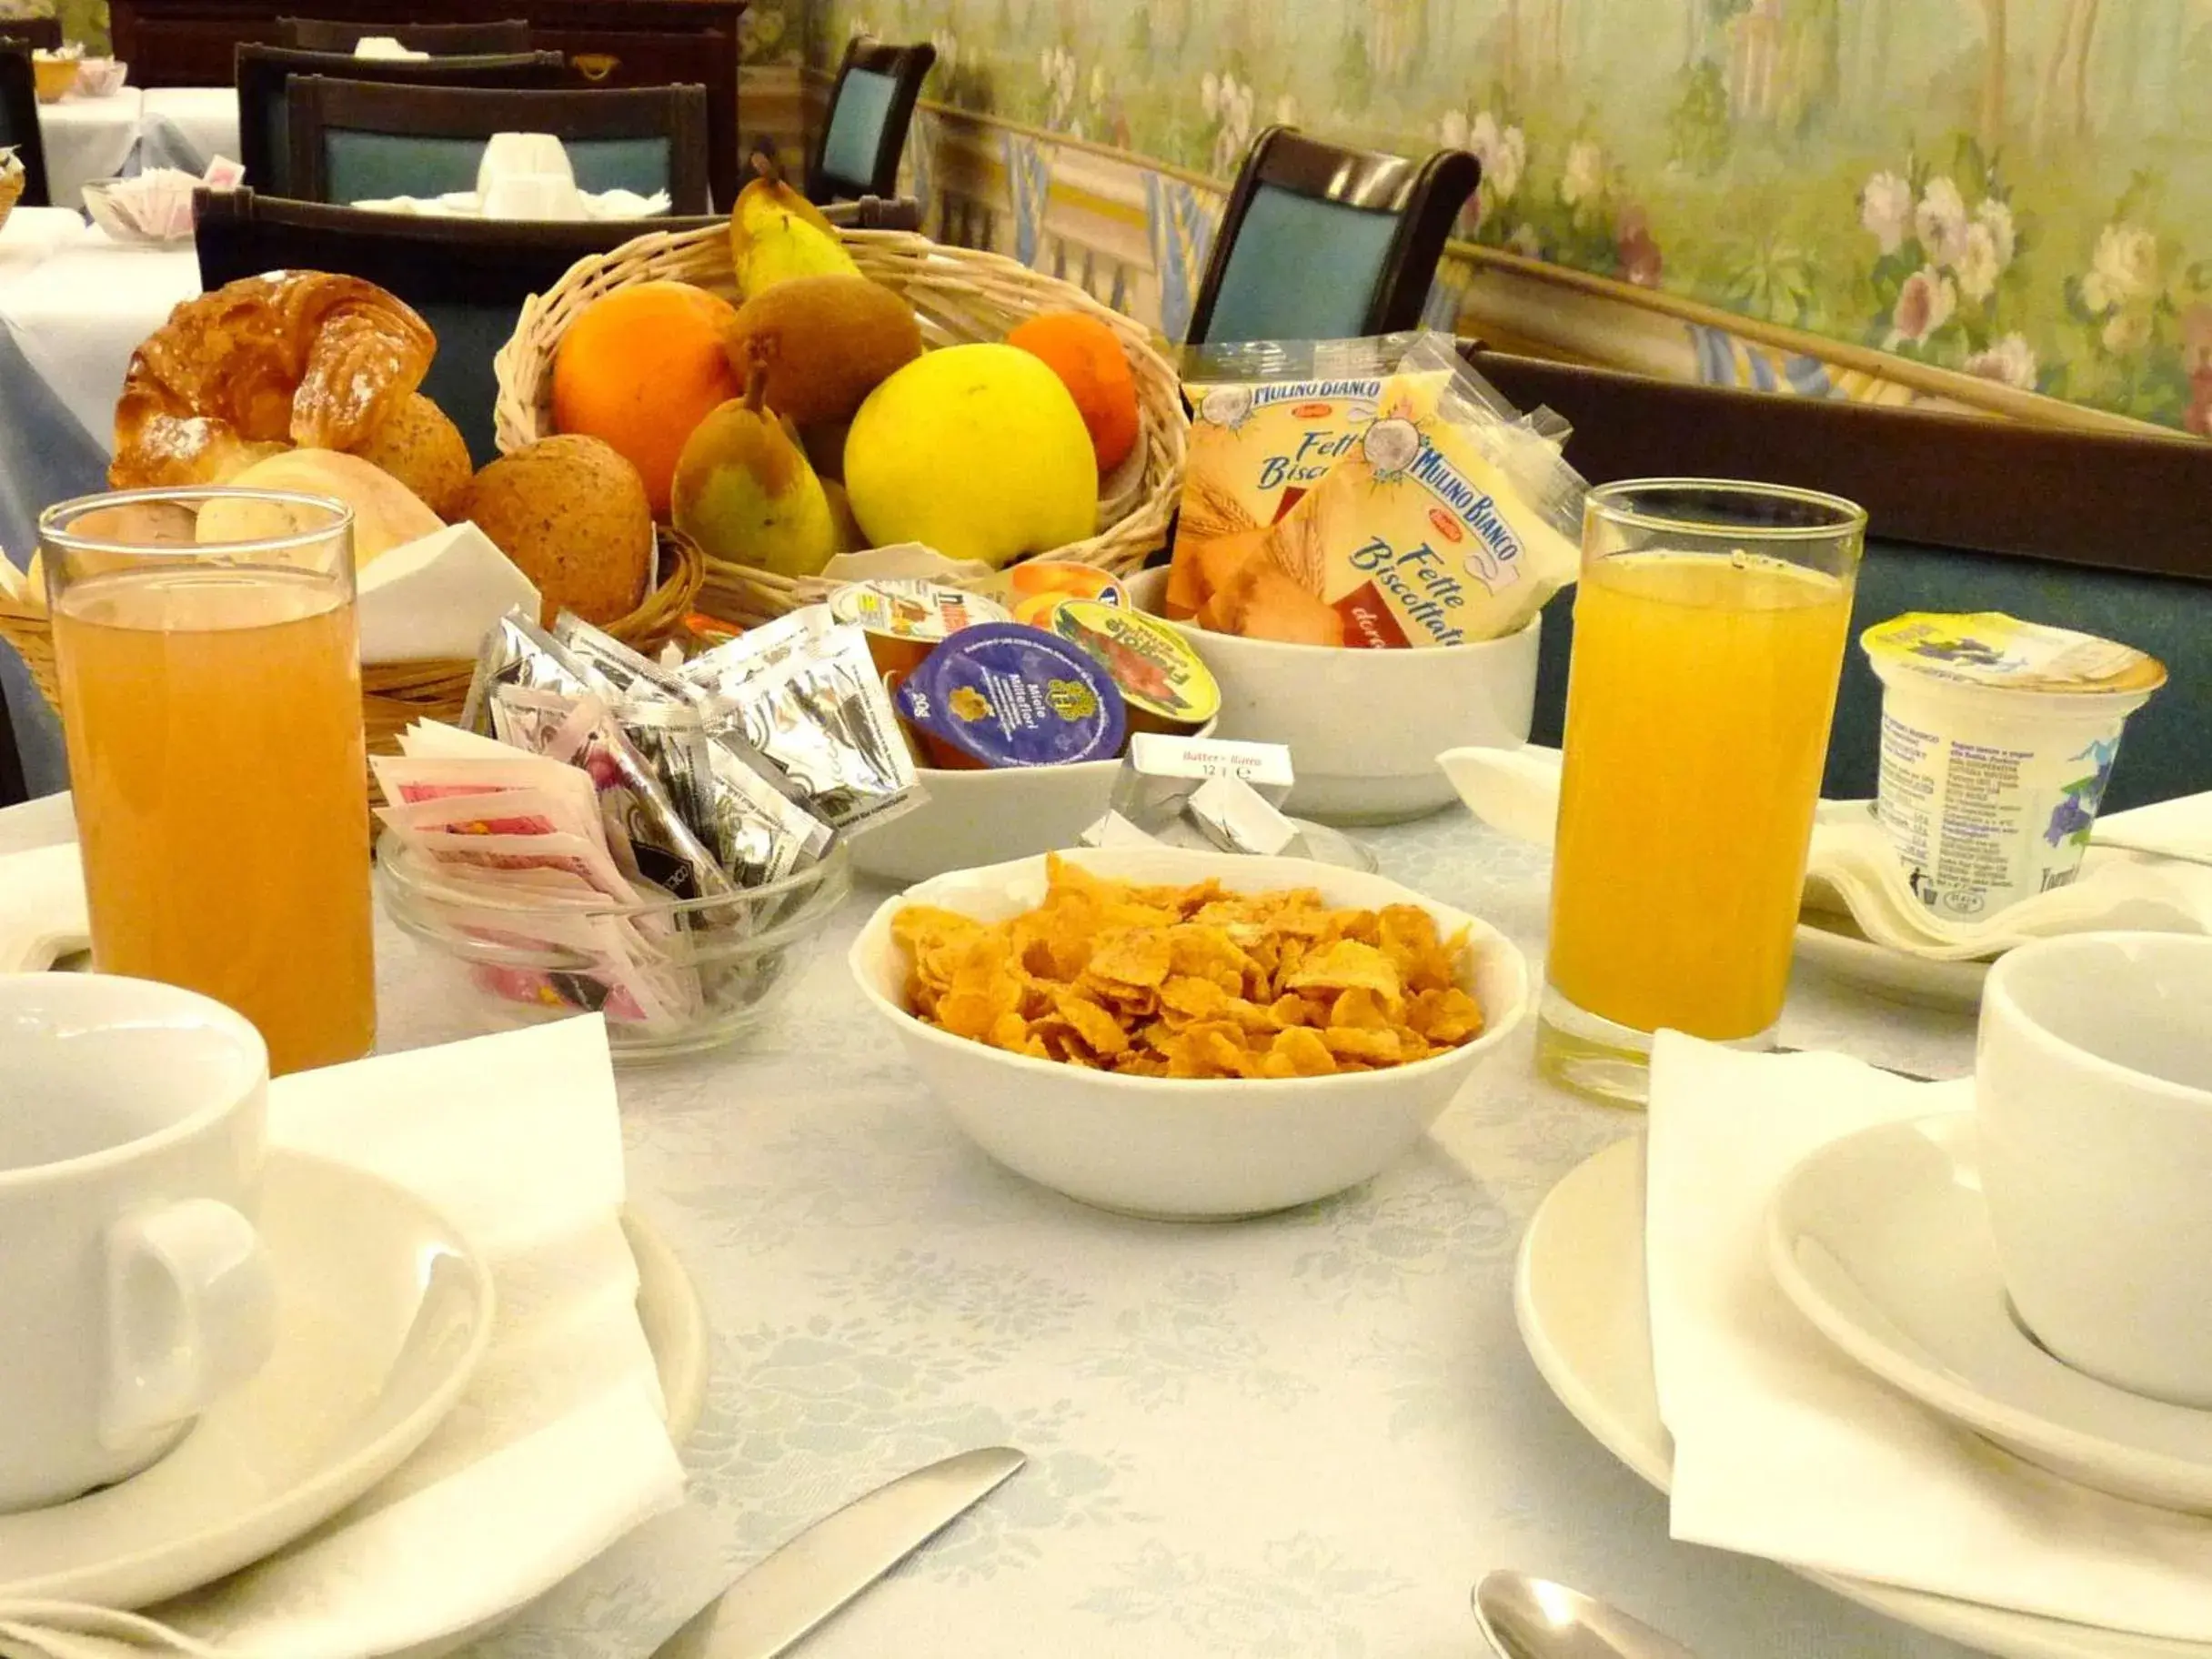 Breakfast in Classic Hotel